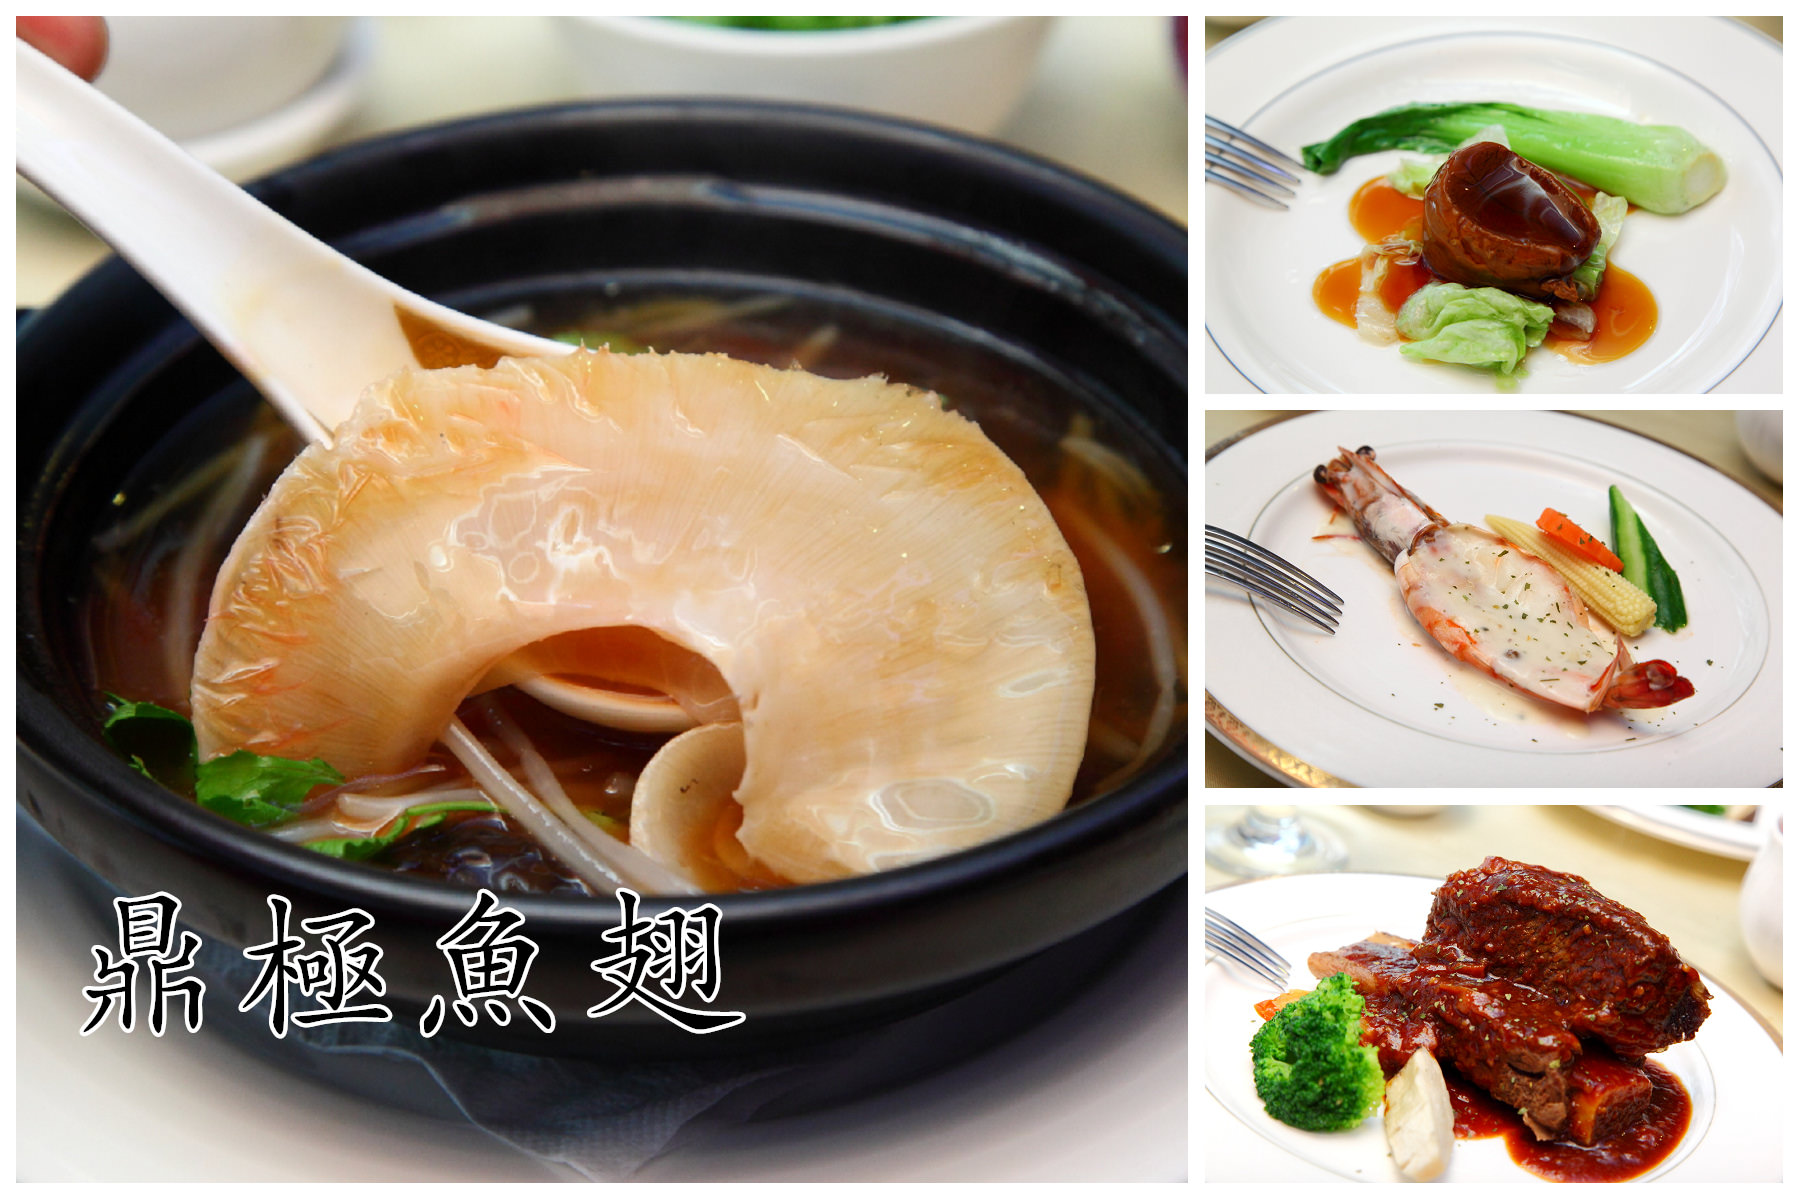 中山區魚翅餐廳,台北頂級餐廳,林森北路魚翅餐廳,邀稿,台北魚翅餐廳 @大手牽小手。玩樂趣